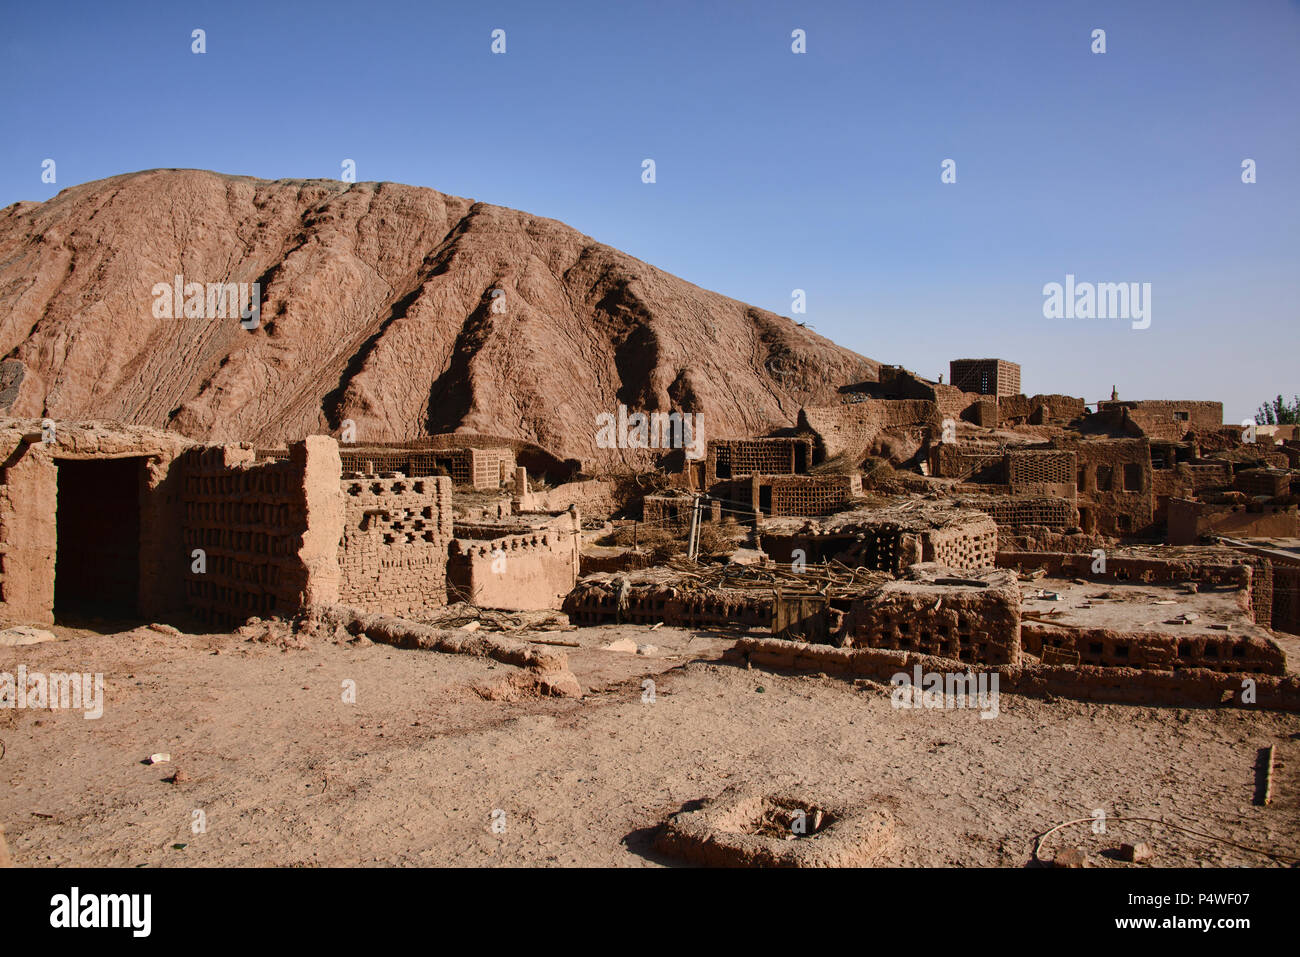 Ancient mud brick village in the Tuyoq Valley, Turpan, Xinjiang, China Stock Photo